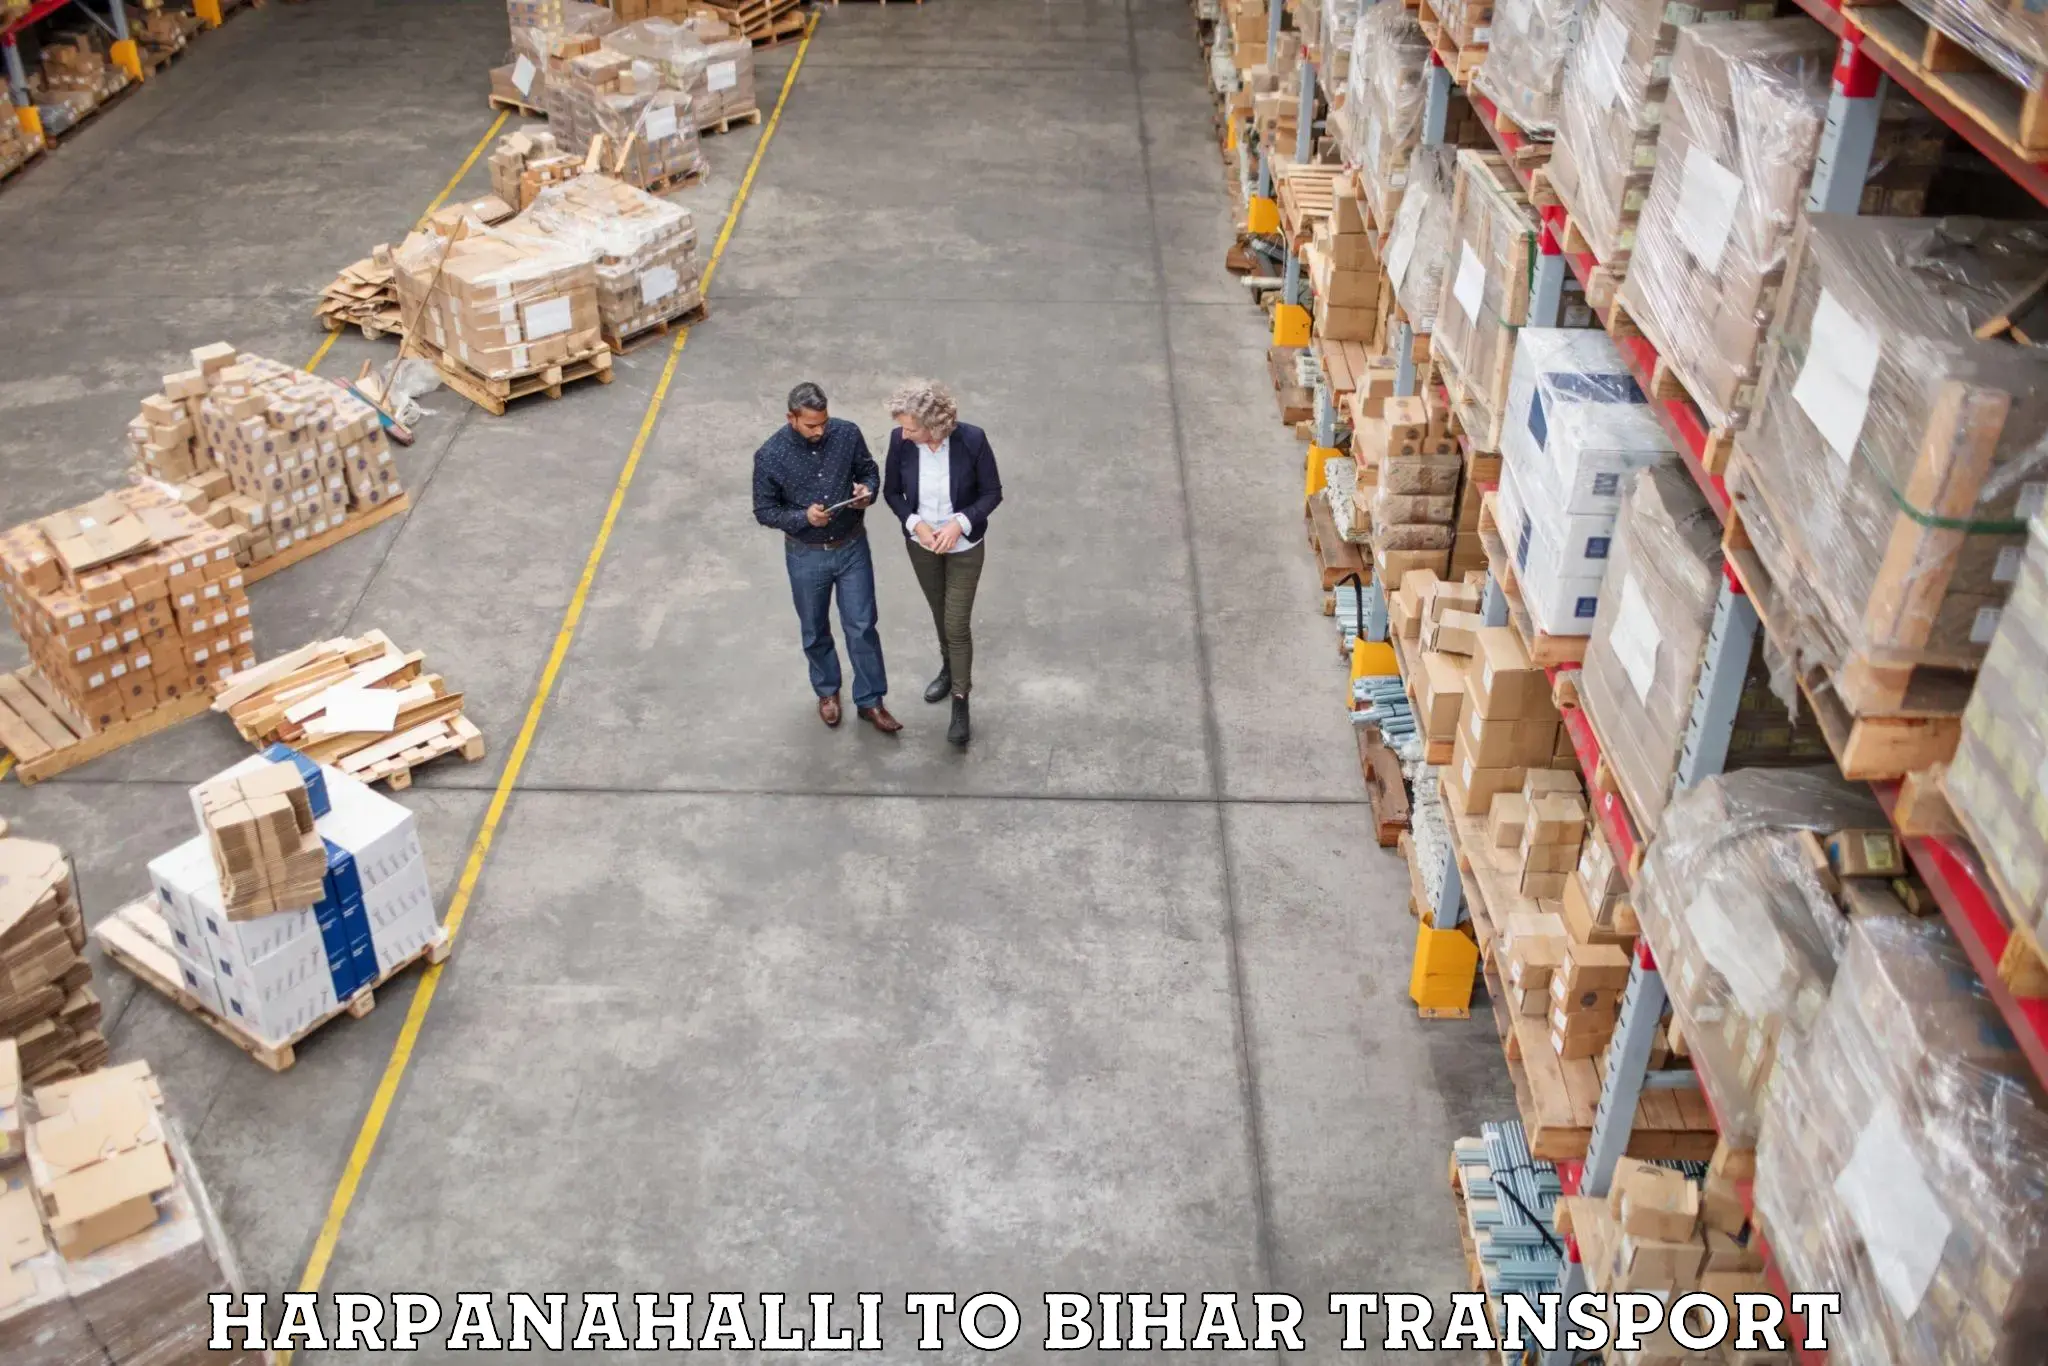 Part load transport service in India Harpanahalli to Malmaliya